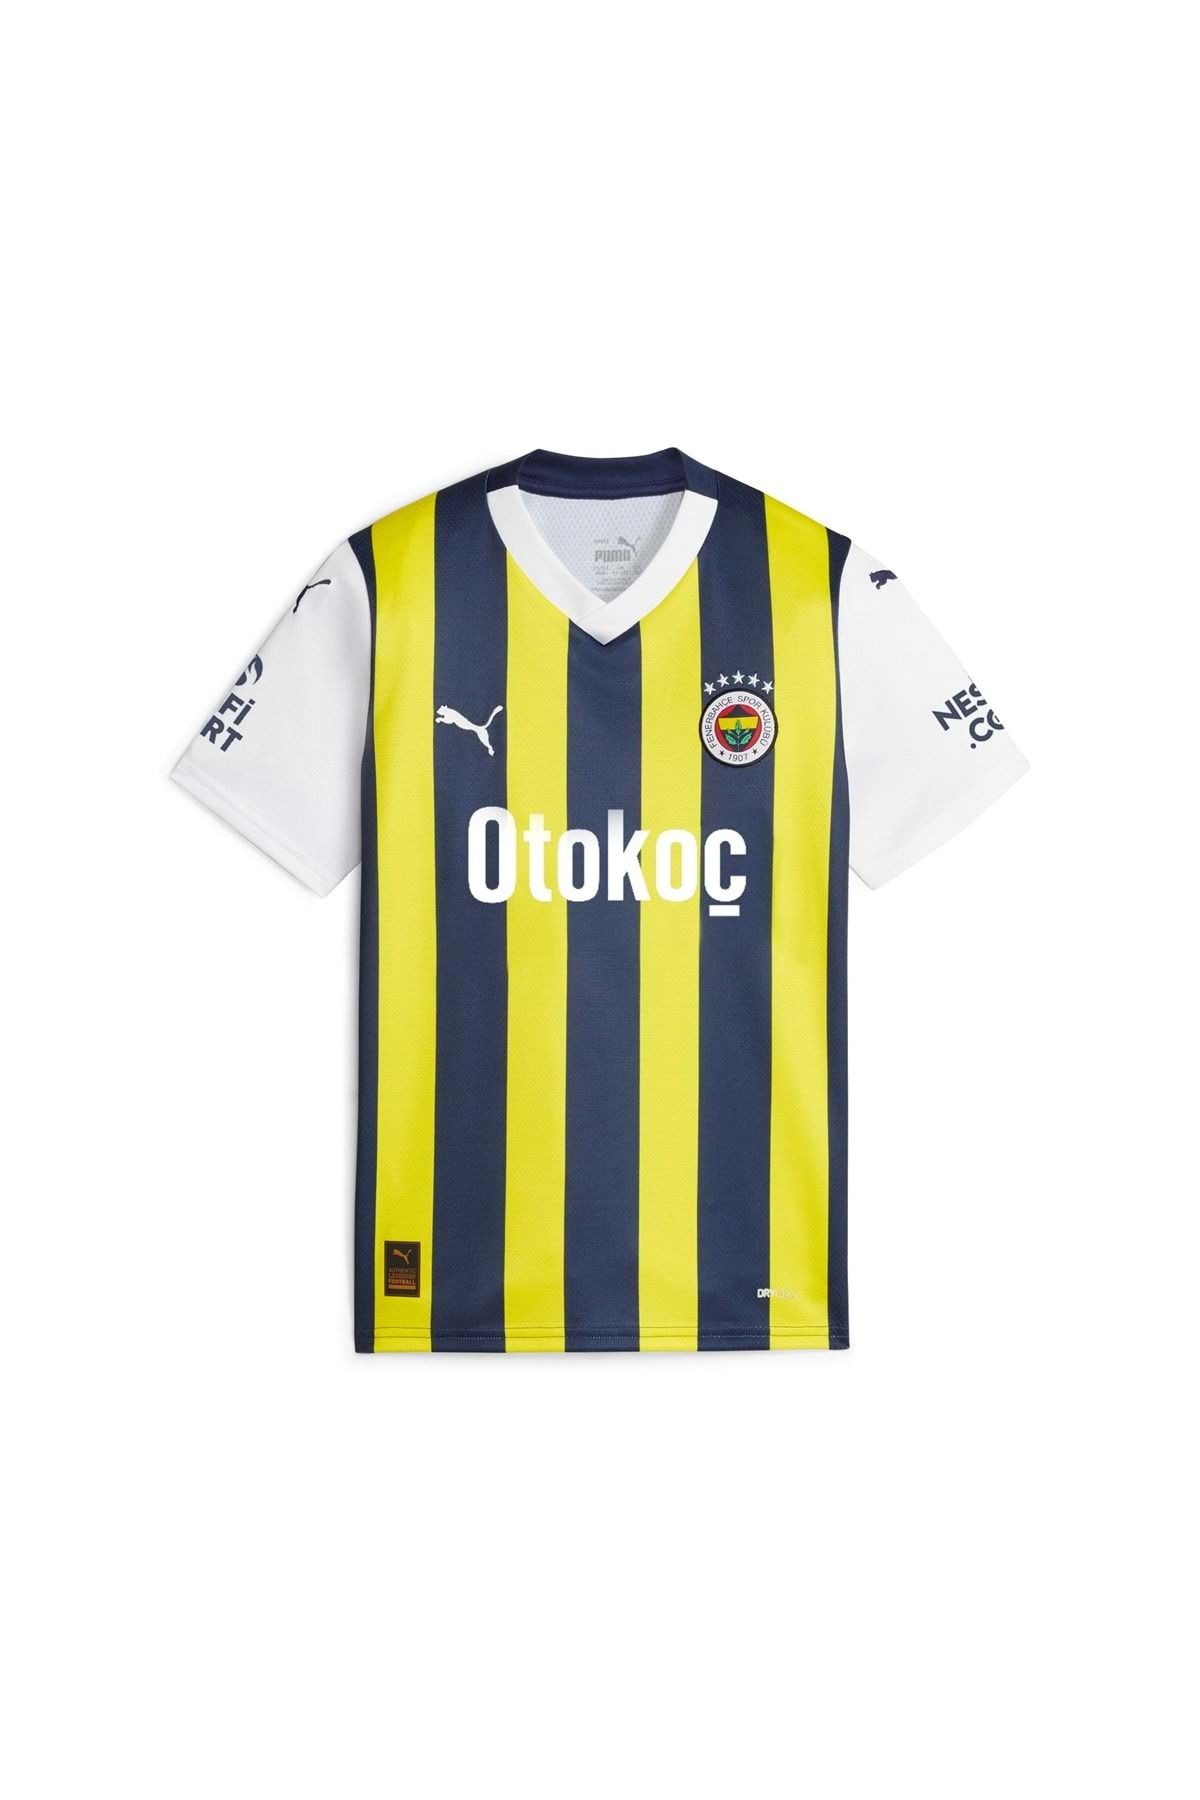 Fenerbahçe Çubuklu Forma 772001-01 Fsk 23/24 Çocuk Jr Iç Saha Forması Sarı-lacivert